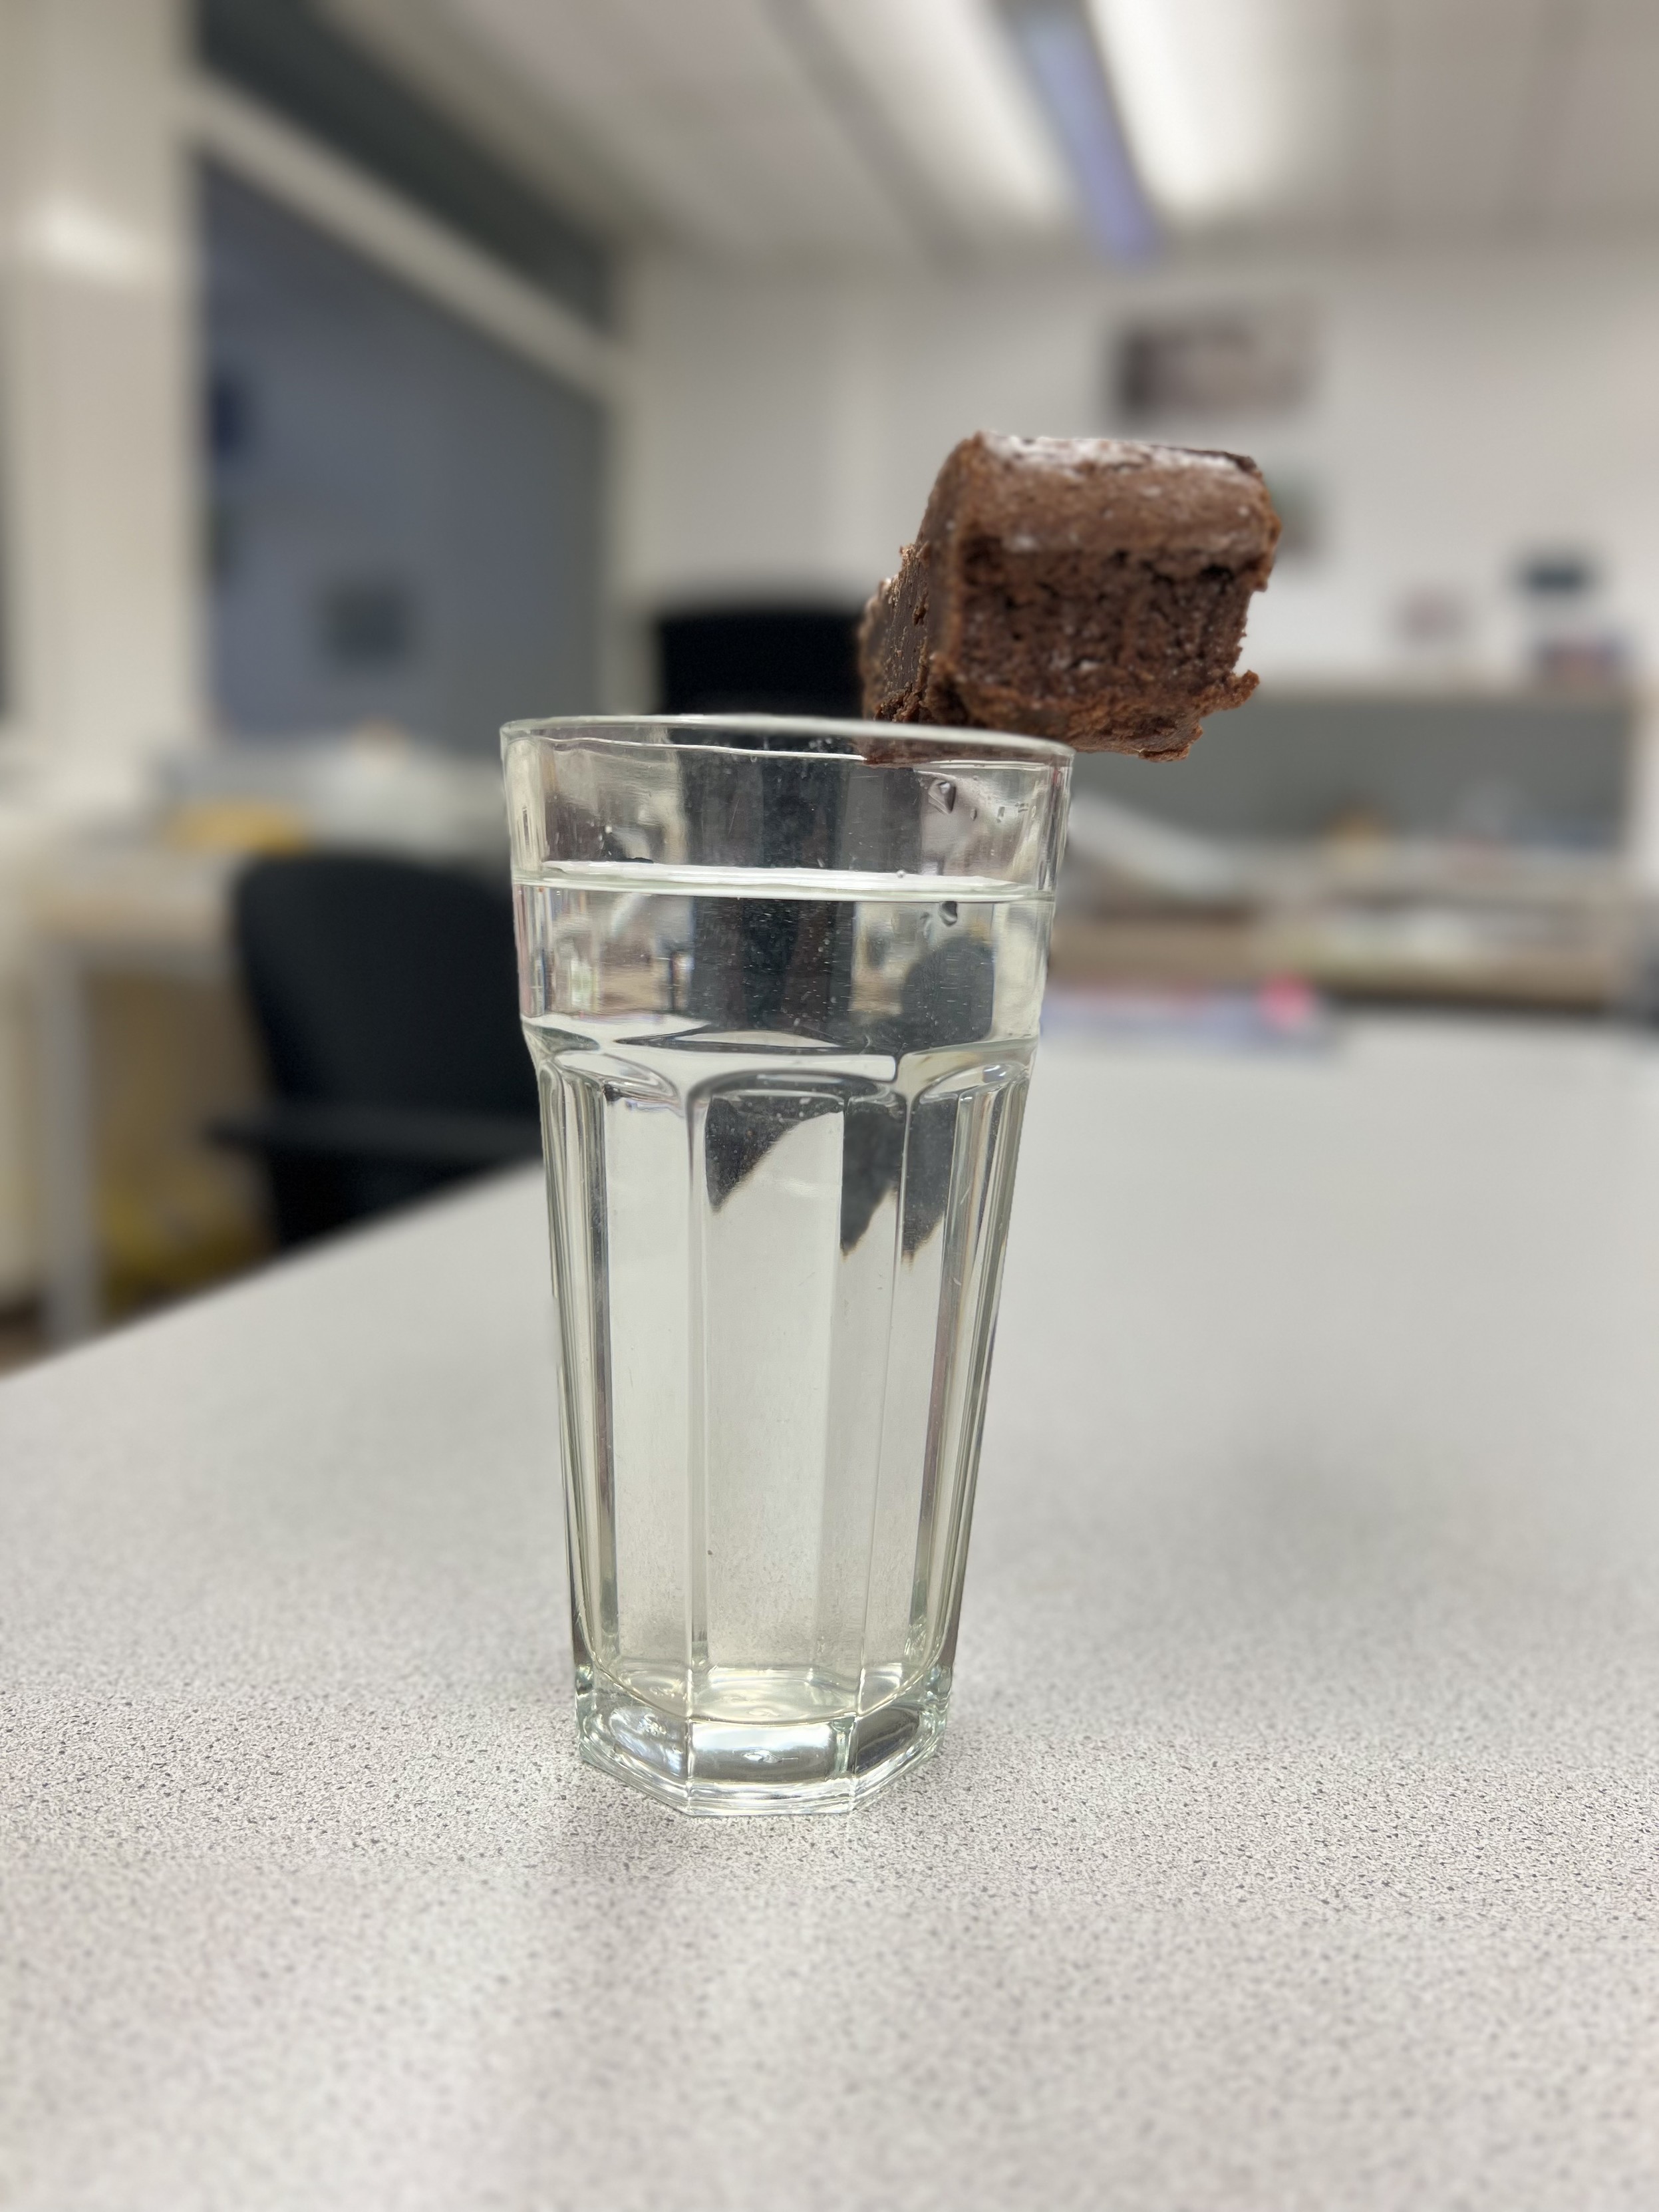 Ein Glas mit klarem Wasser steht auf einer Tischplatte, wobei der Fokus auf einem schwebenden Stück Schokoladenkuchen liegt, das unscharf im Vordergrund über dem Glas zu schweben scheint. Der Hintergrund ist unscharf, mit Elementen eines Klassenraums oder Büros.